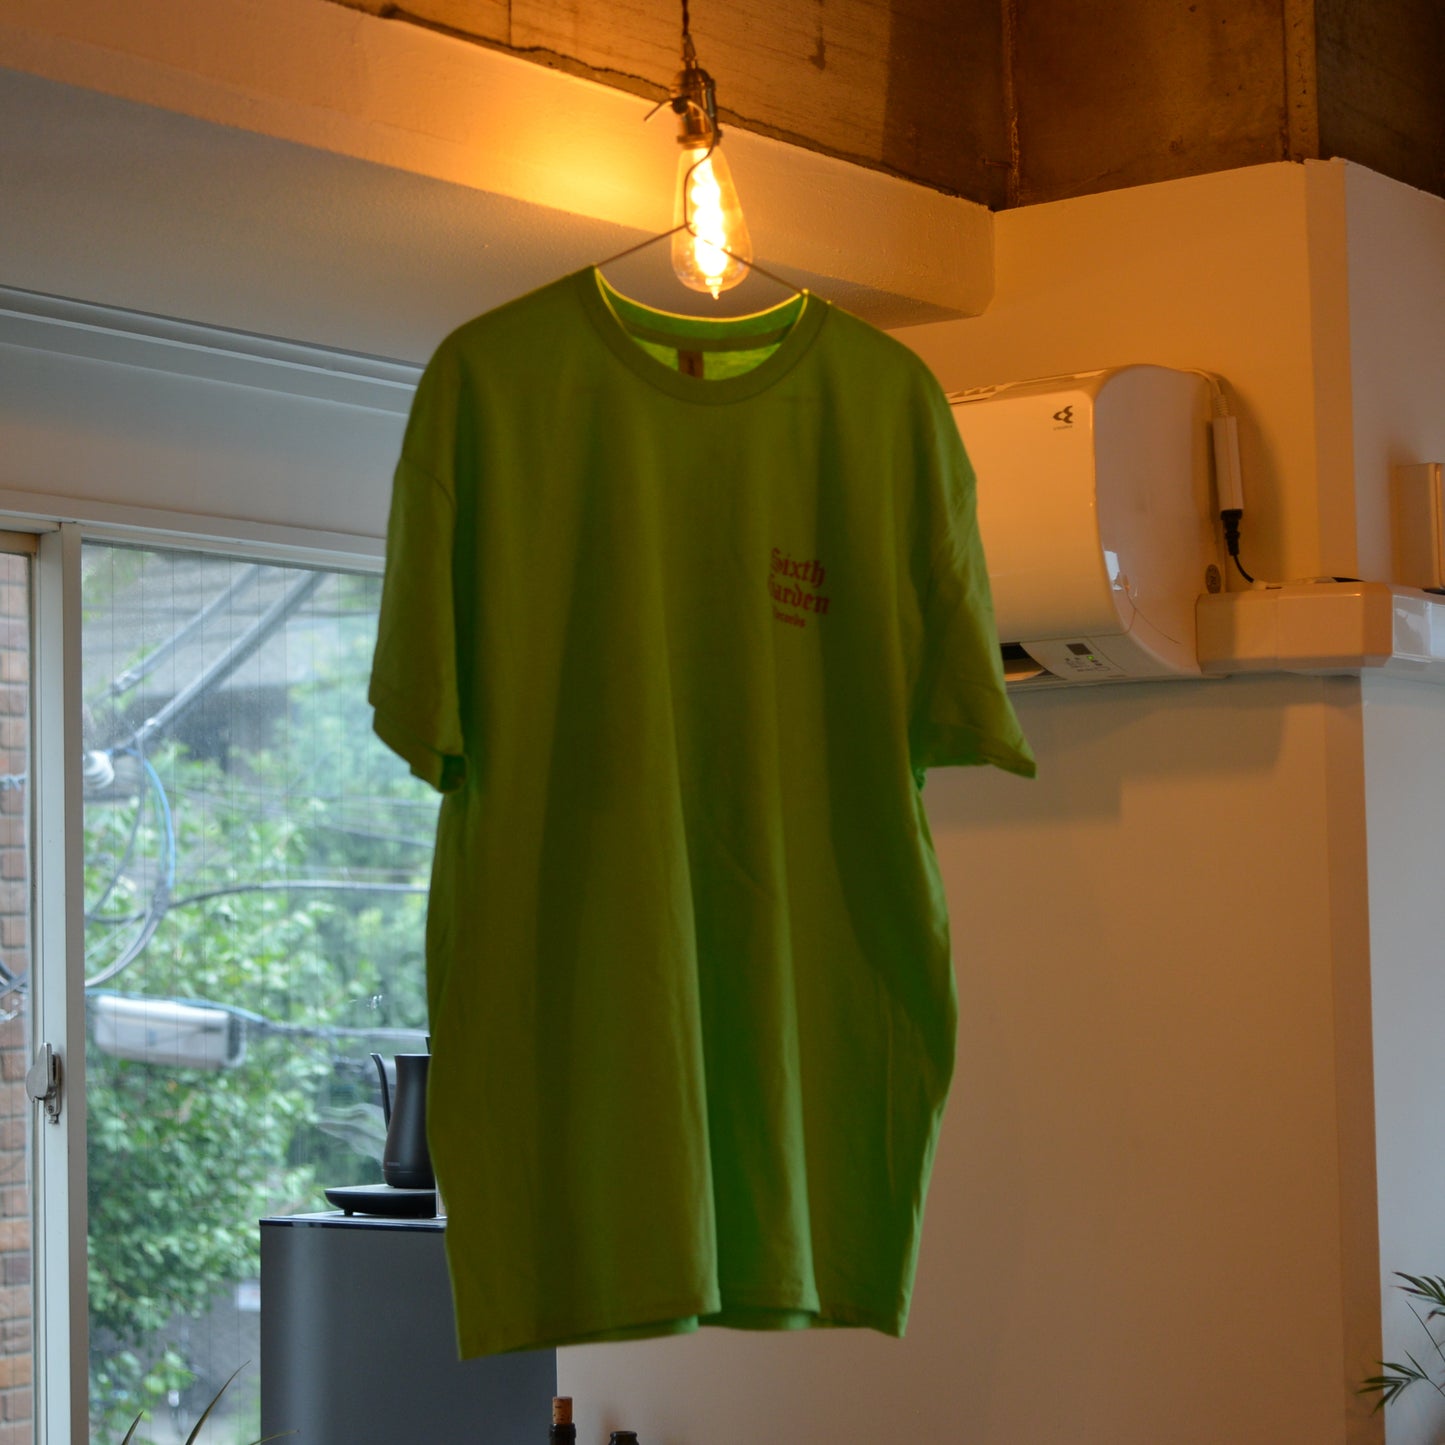 Sixth Garden Records 1st Anniversary T-shirt (light green)